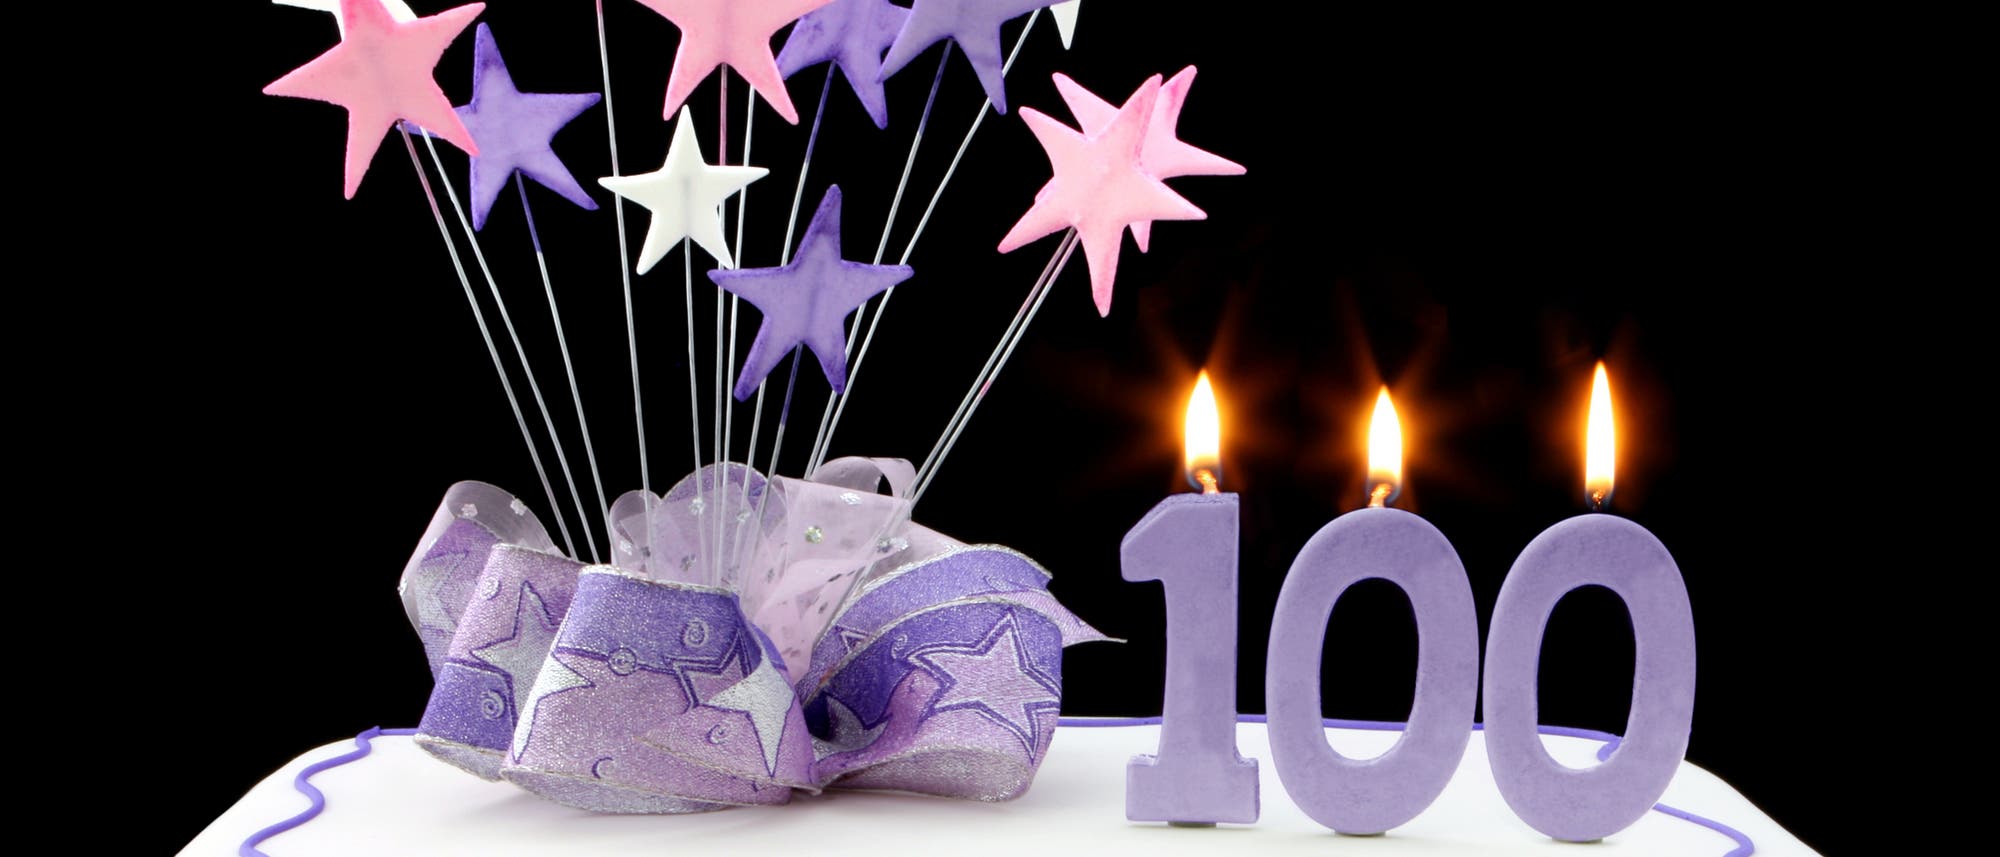 Torte zum 100sten Geburtstag